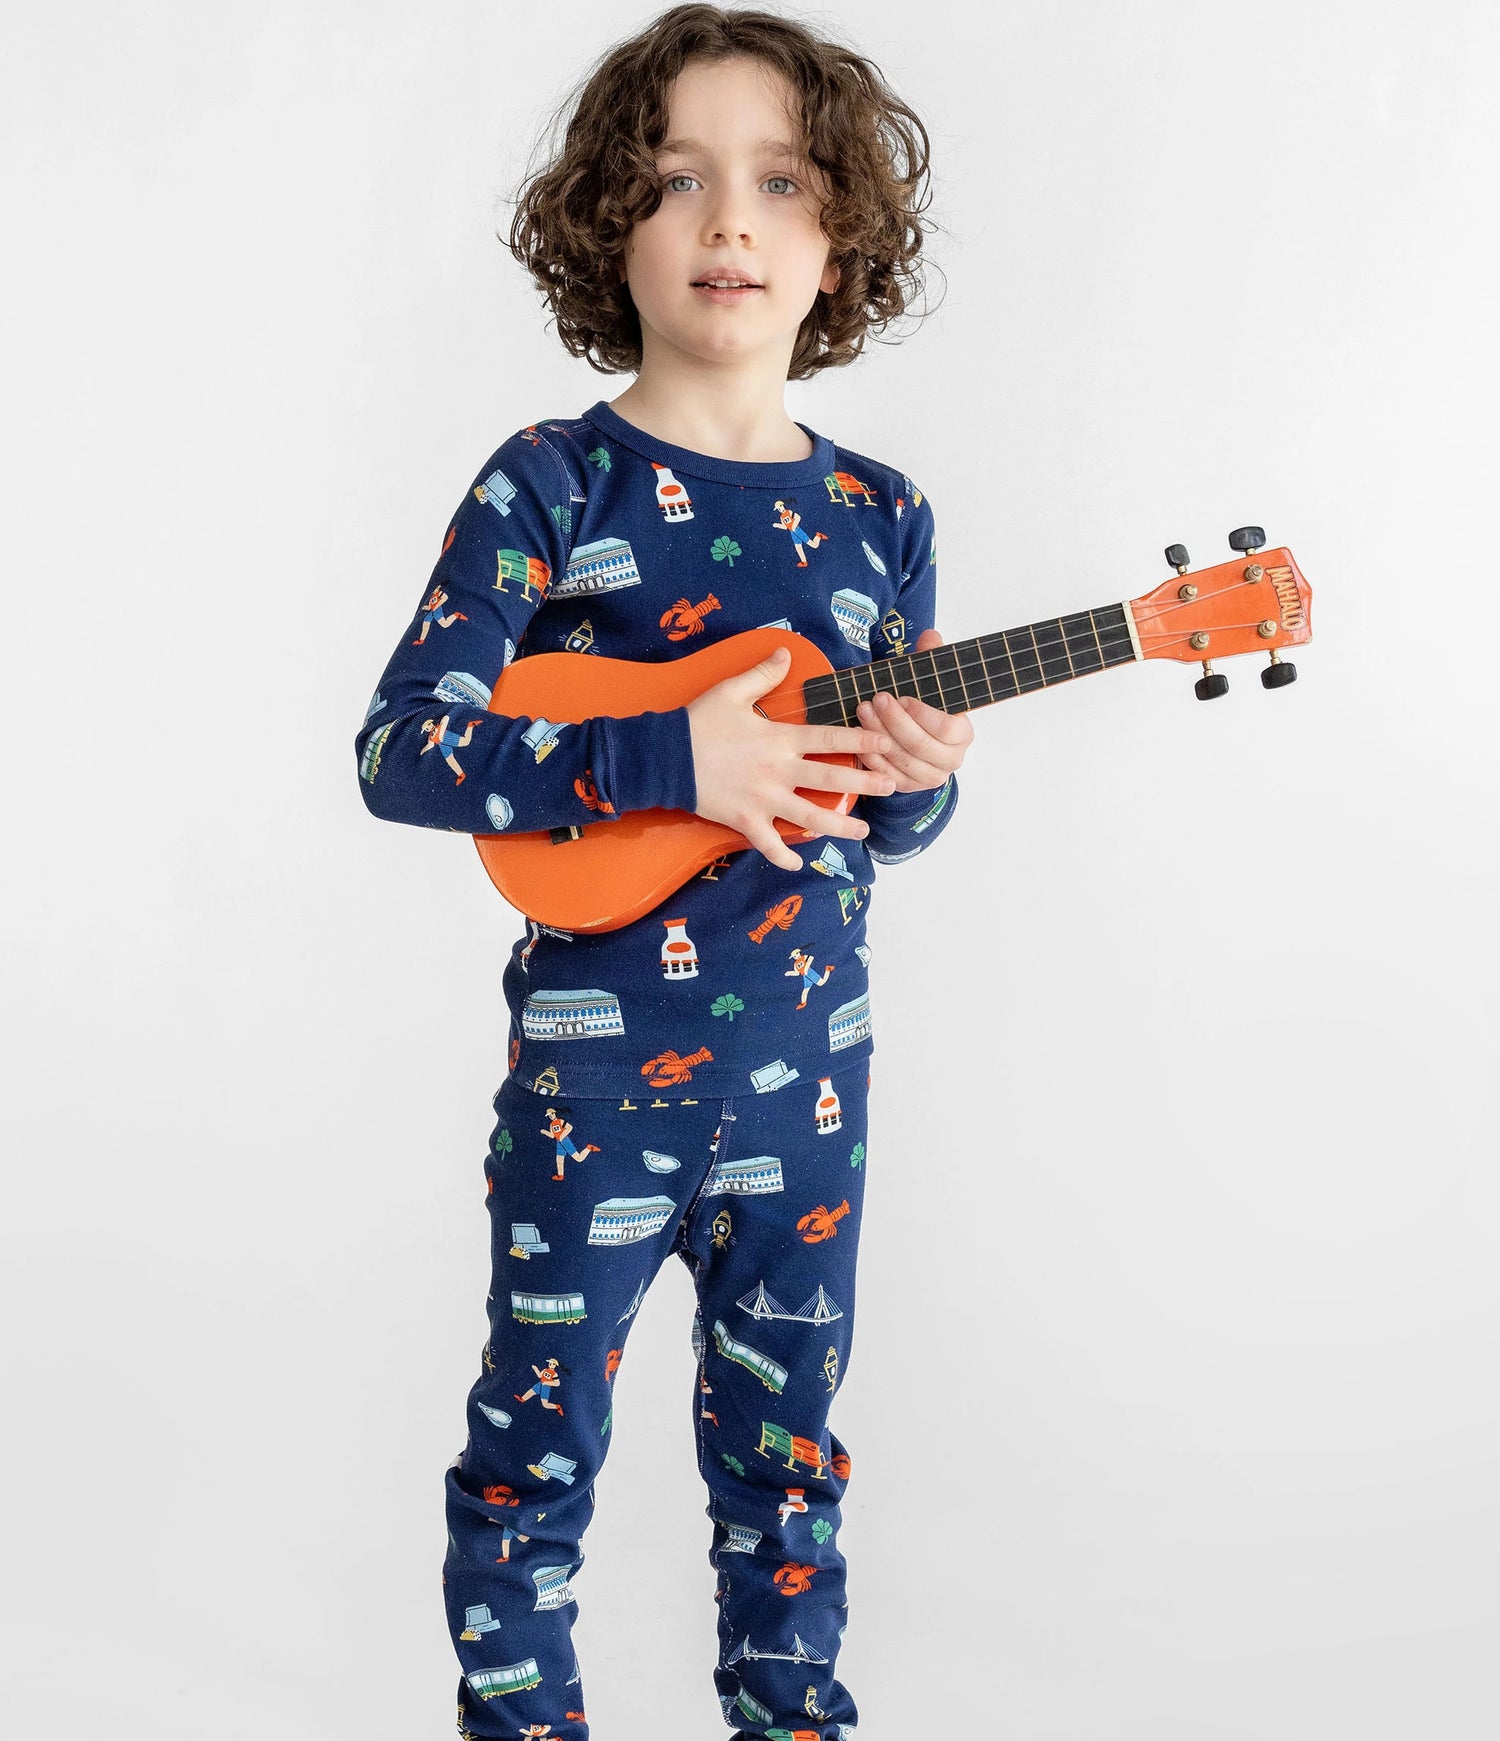 little boy wearing pajamas and holding ukulele